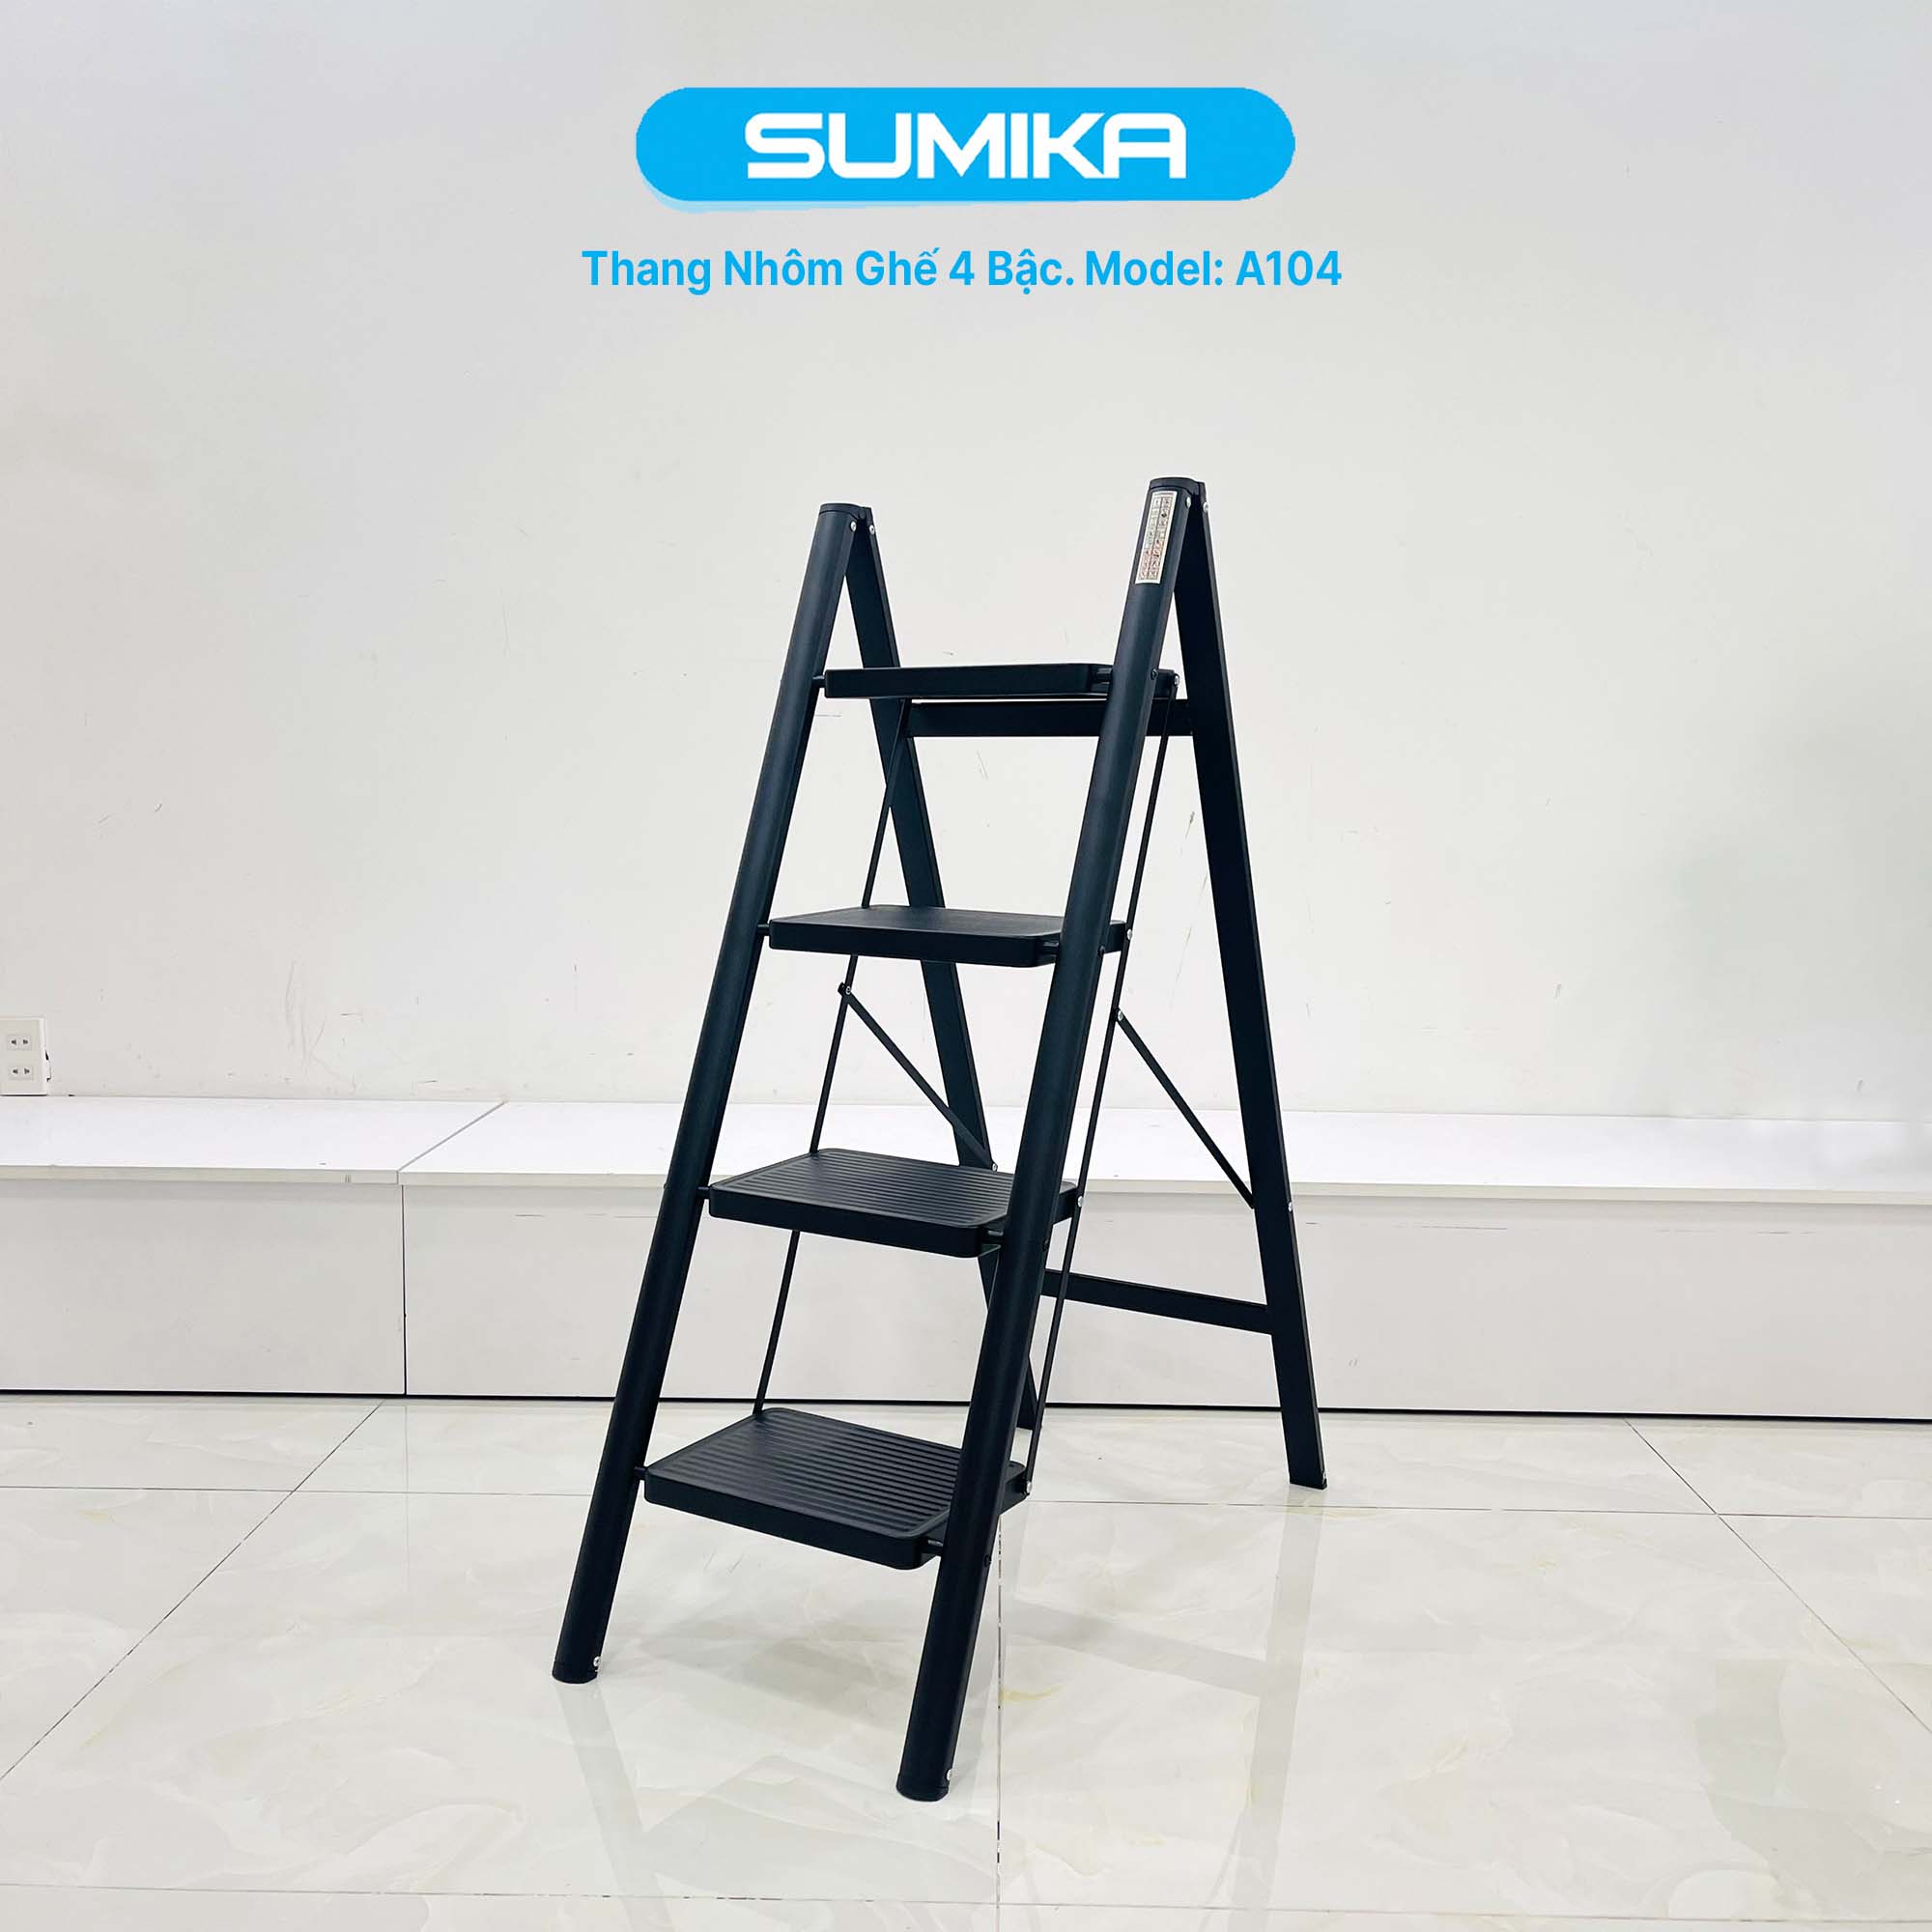 Thang nhôm ghế 4 bậc SUMIKA A104 (Black), chiều cao 94cm